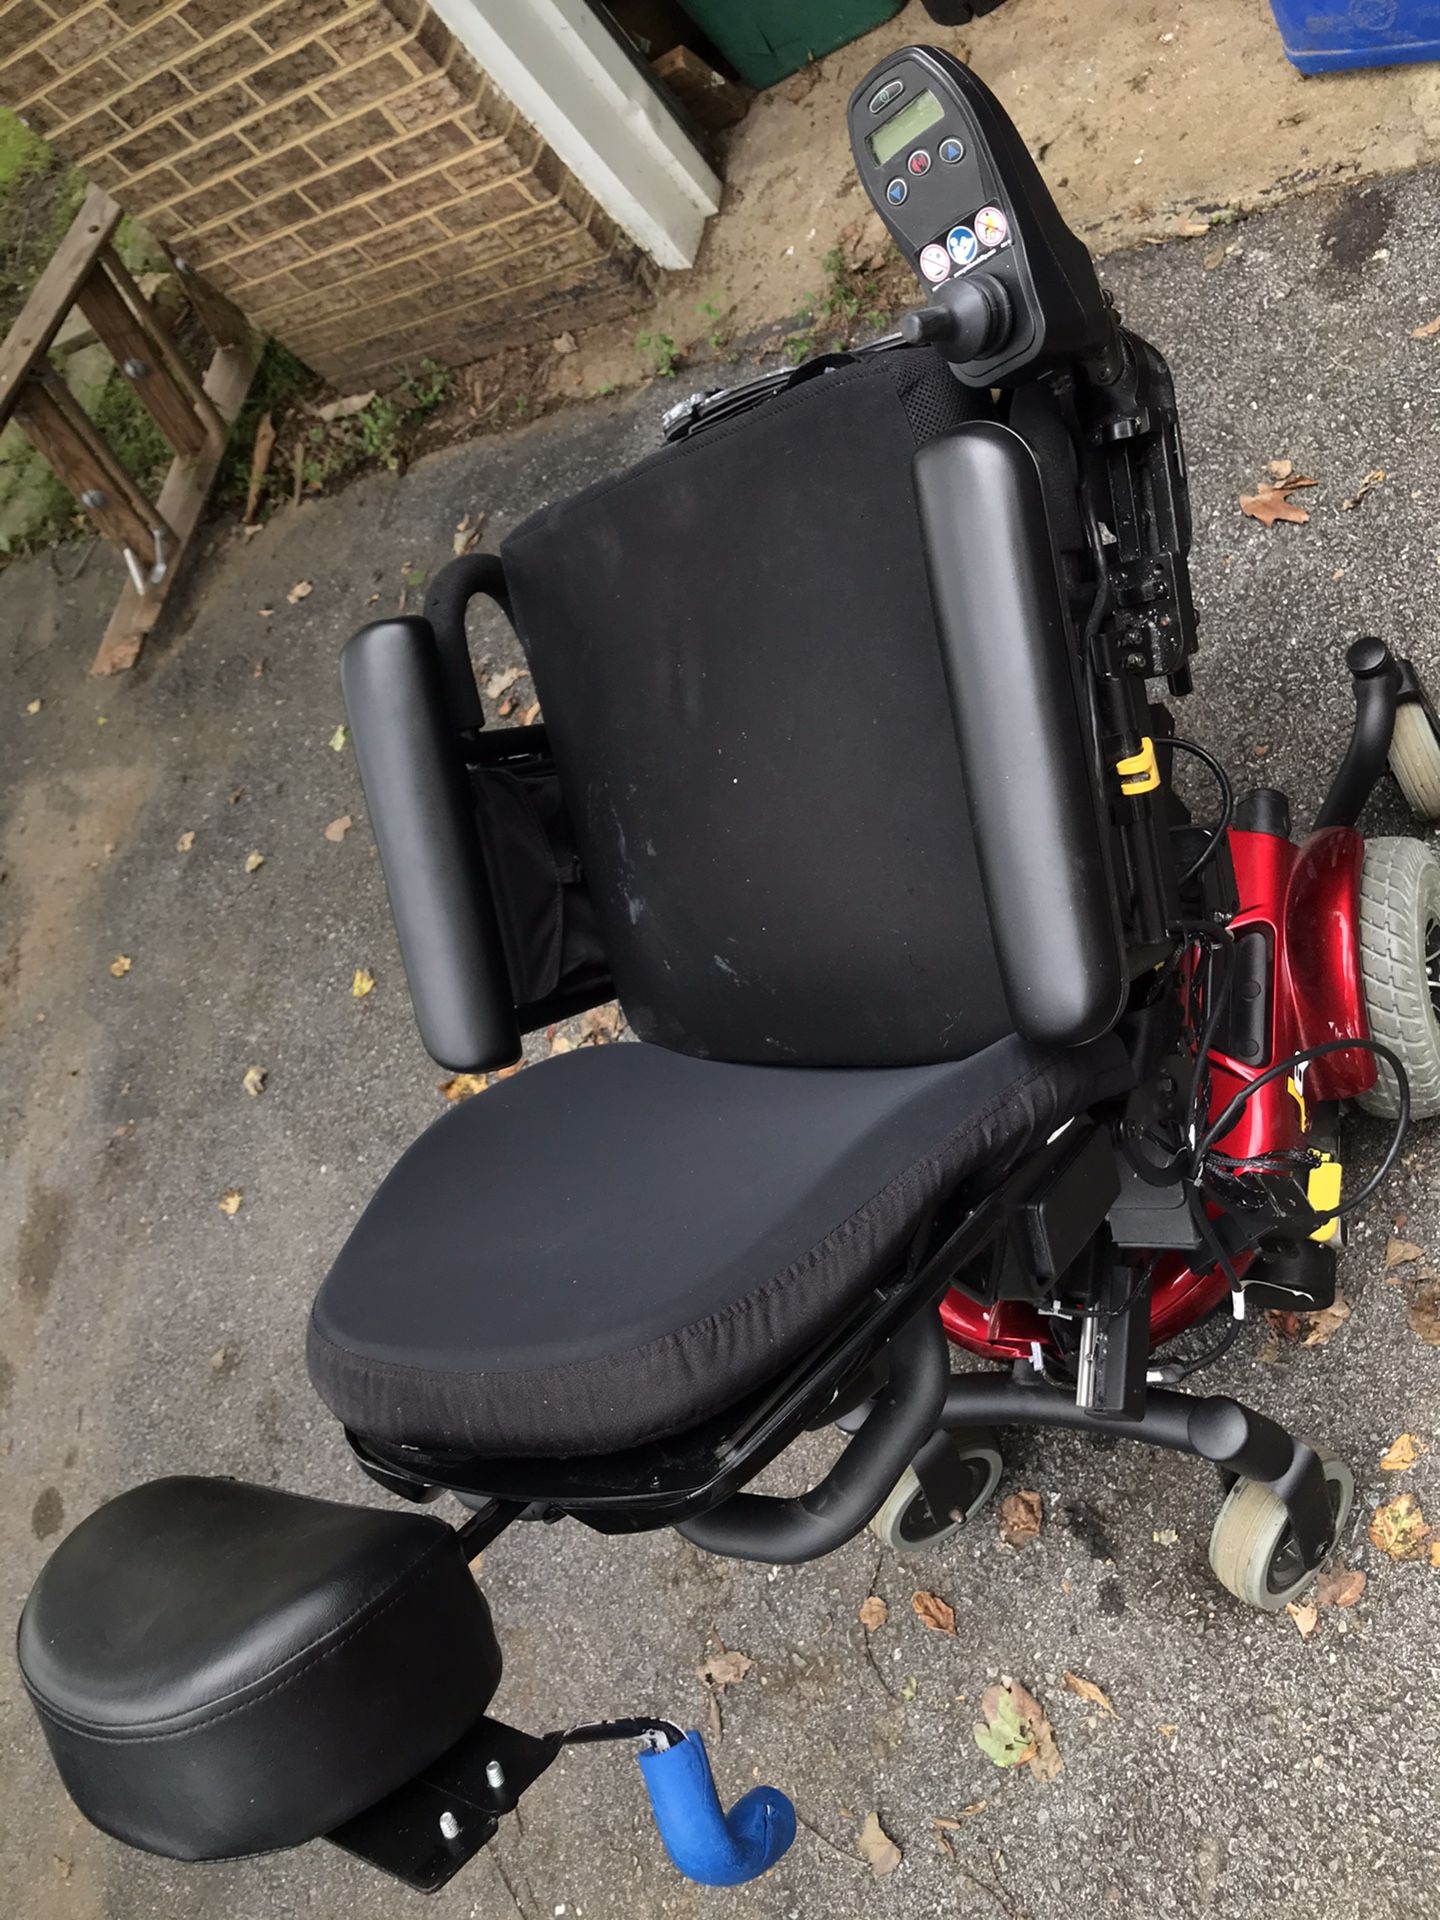 j6 motorized wheel chair